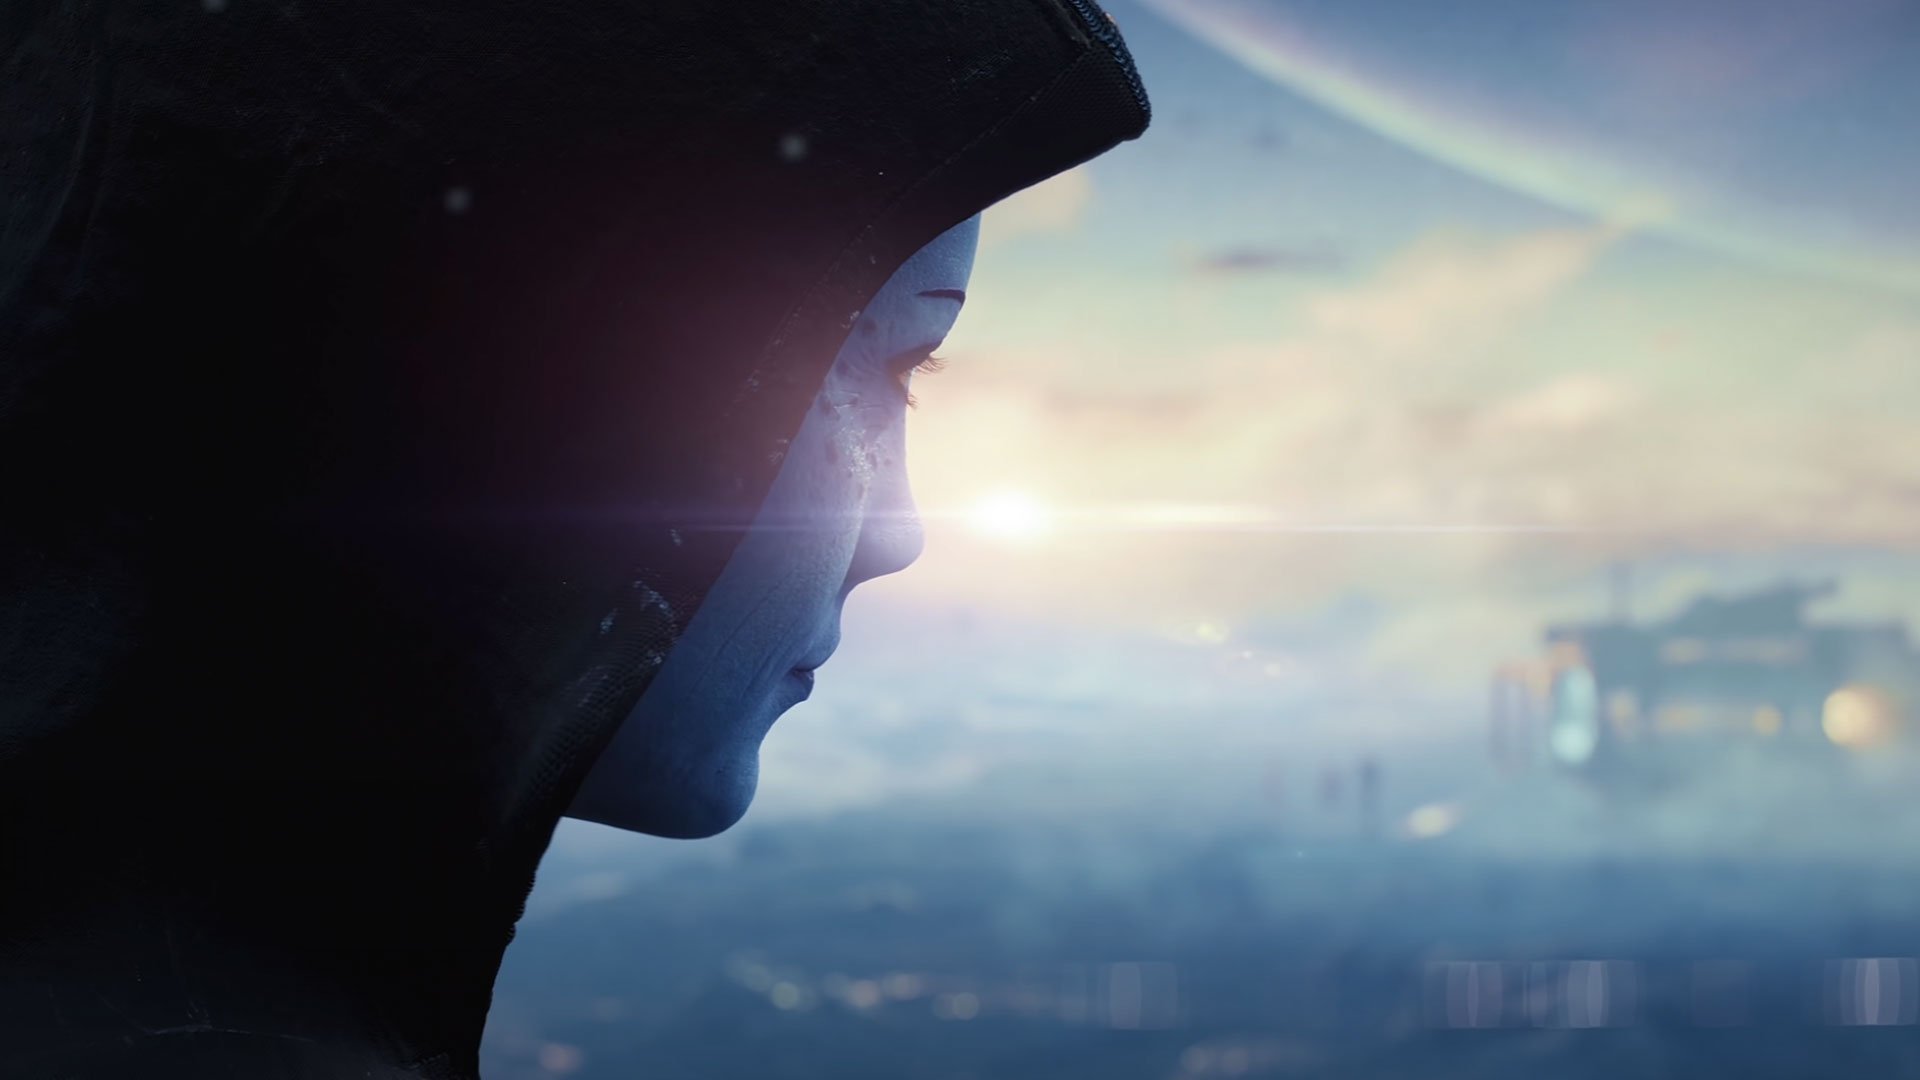 Úgy tűnik, hogy Liara megjelenik a következő Mass Effect játék első teaserében